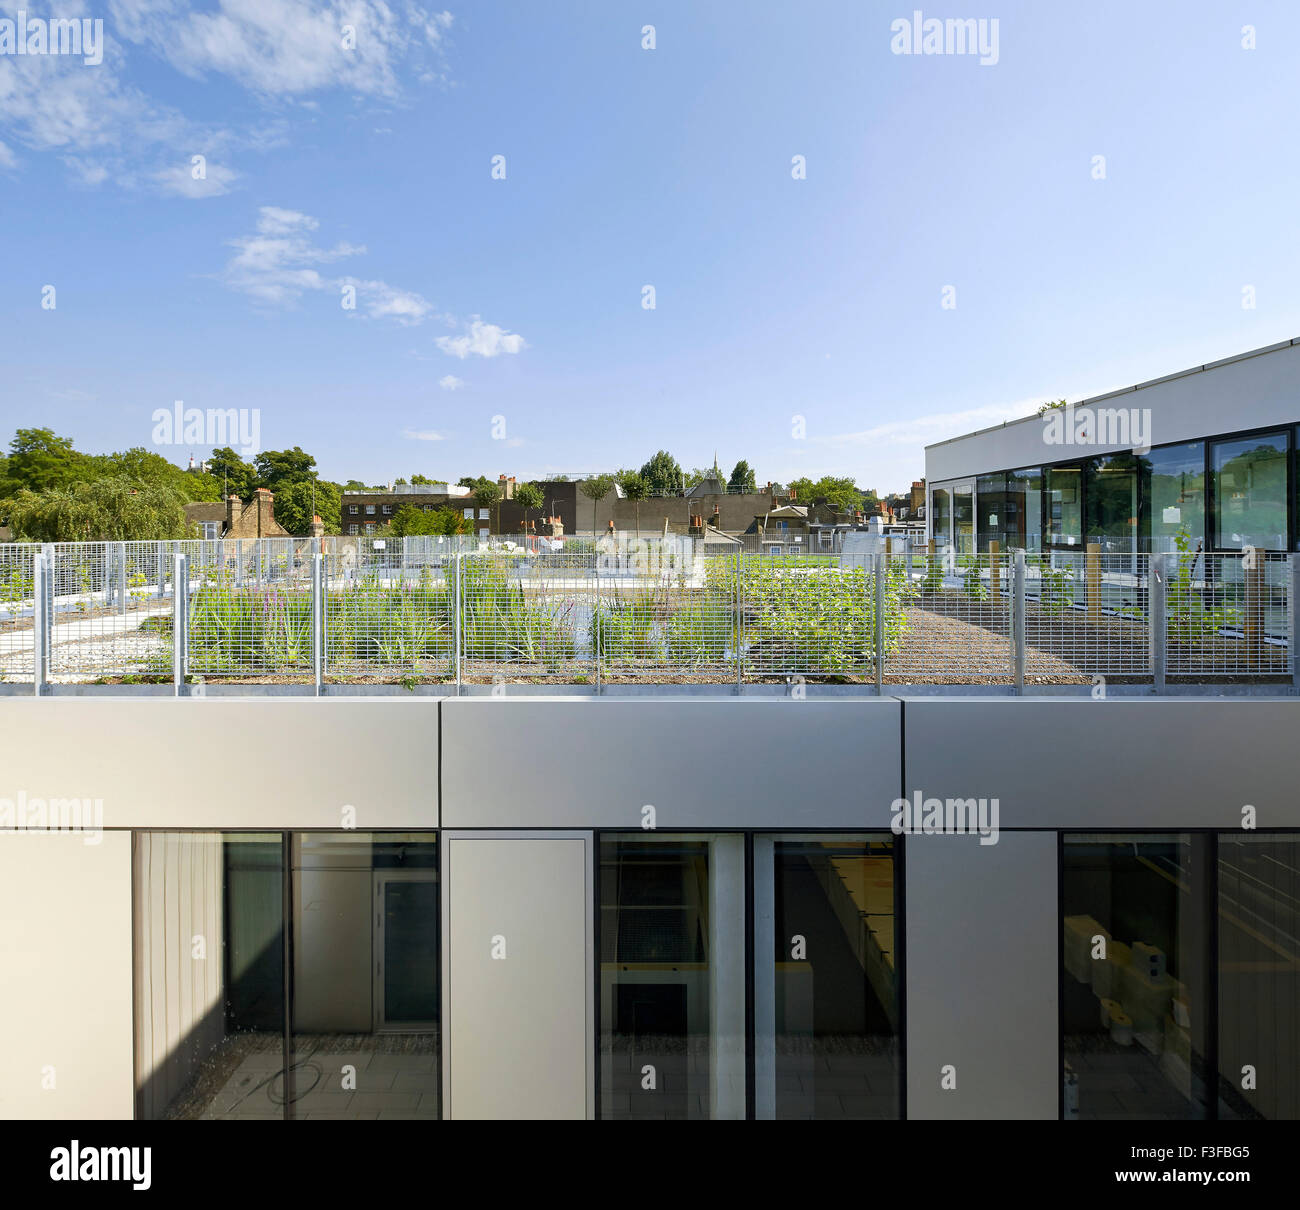 Jardin sur le toit. L'École d'architecture de Greenwich, Londres, Royaume-Uni. Architecte : Heneghan Peng architectes, 2015. Banque D'Images